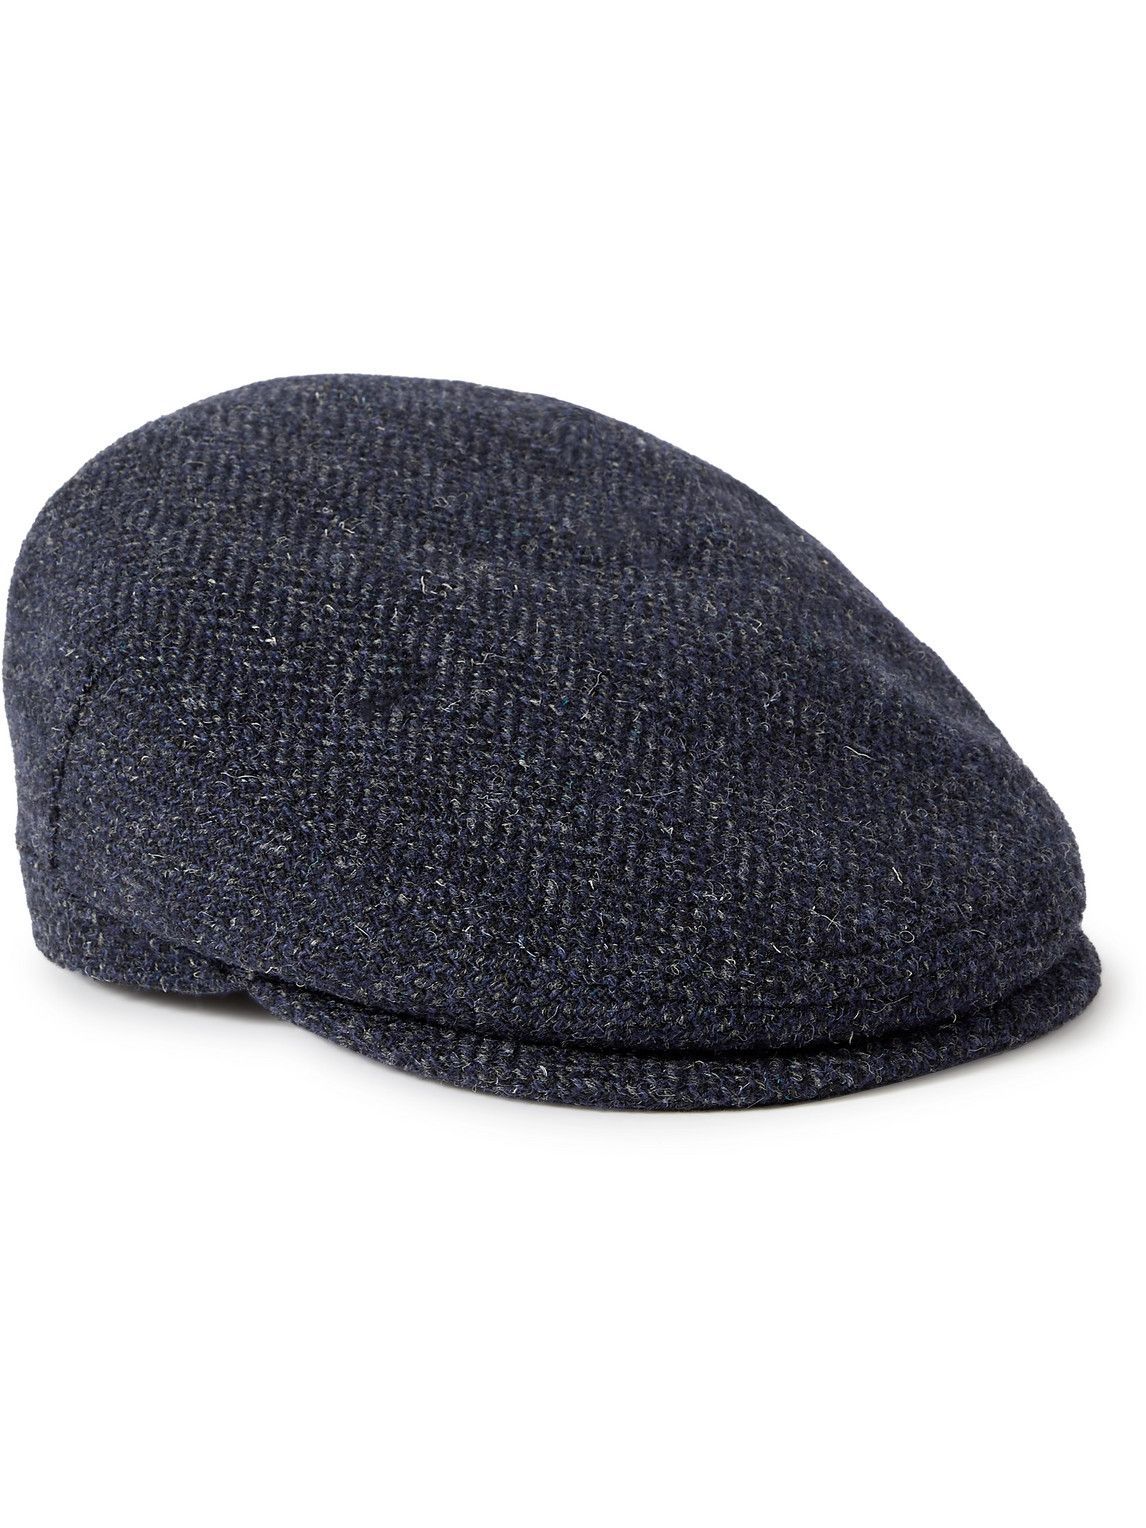 Kingsman - Lock & Co Hatters Checked Wool-Tweed Flat Cap - Blue Kingsman